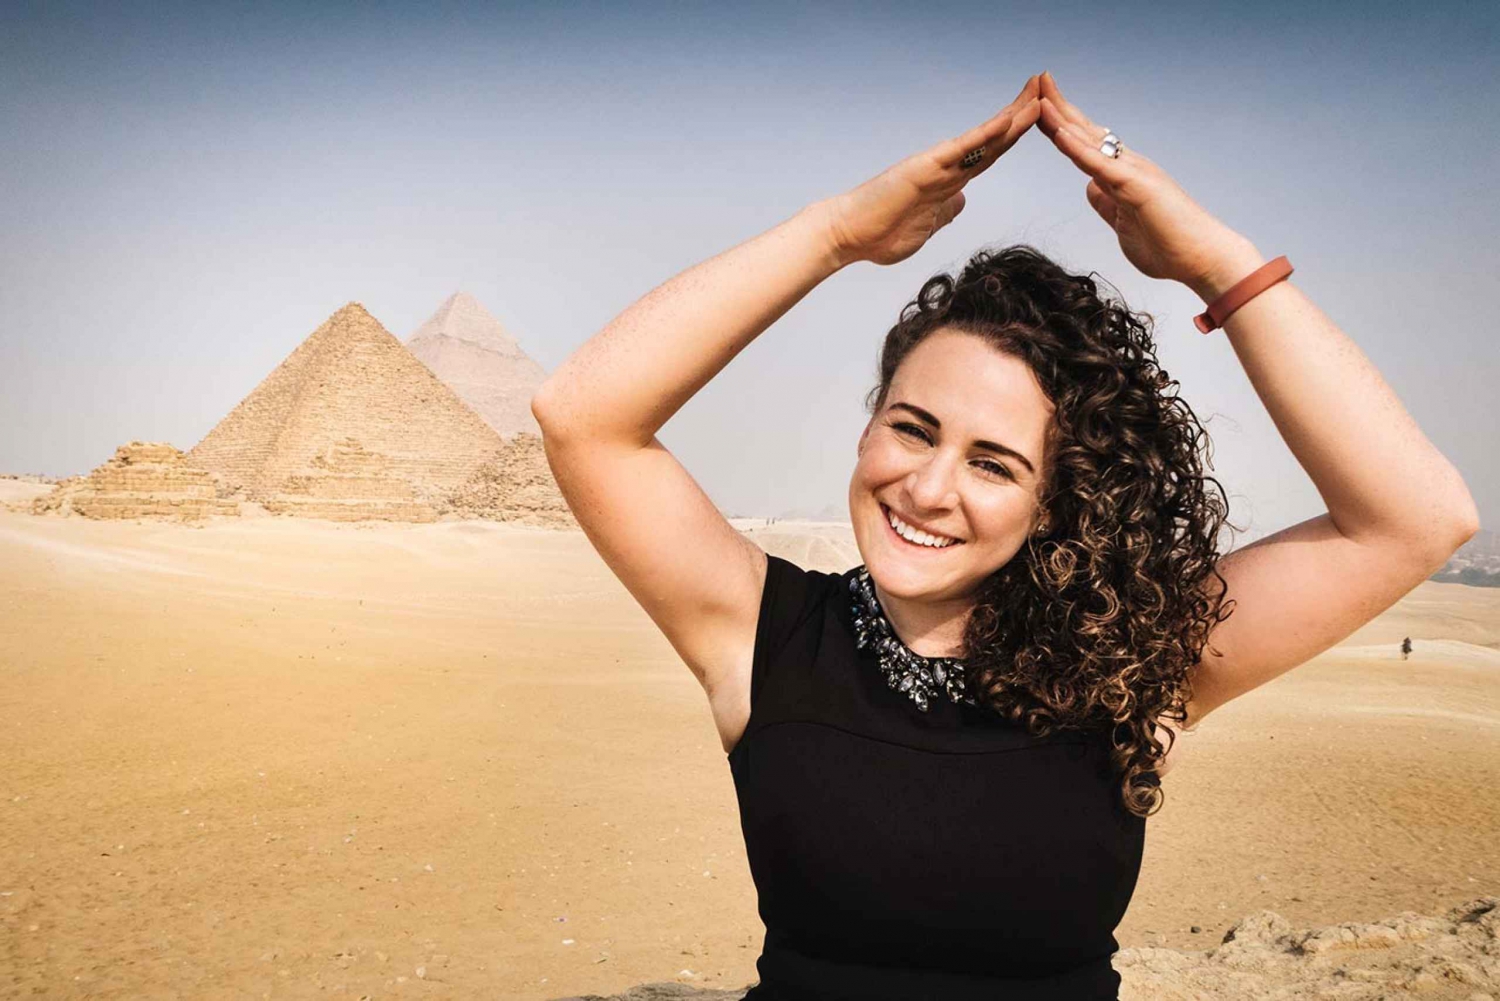 Kairo: Tagestour Besuch der Pyramiden, Sphinx, Saqqara und Memphis.